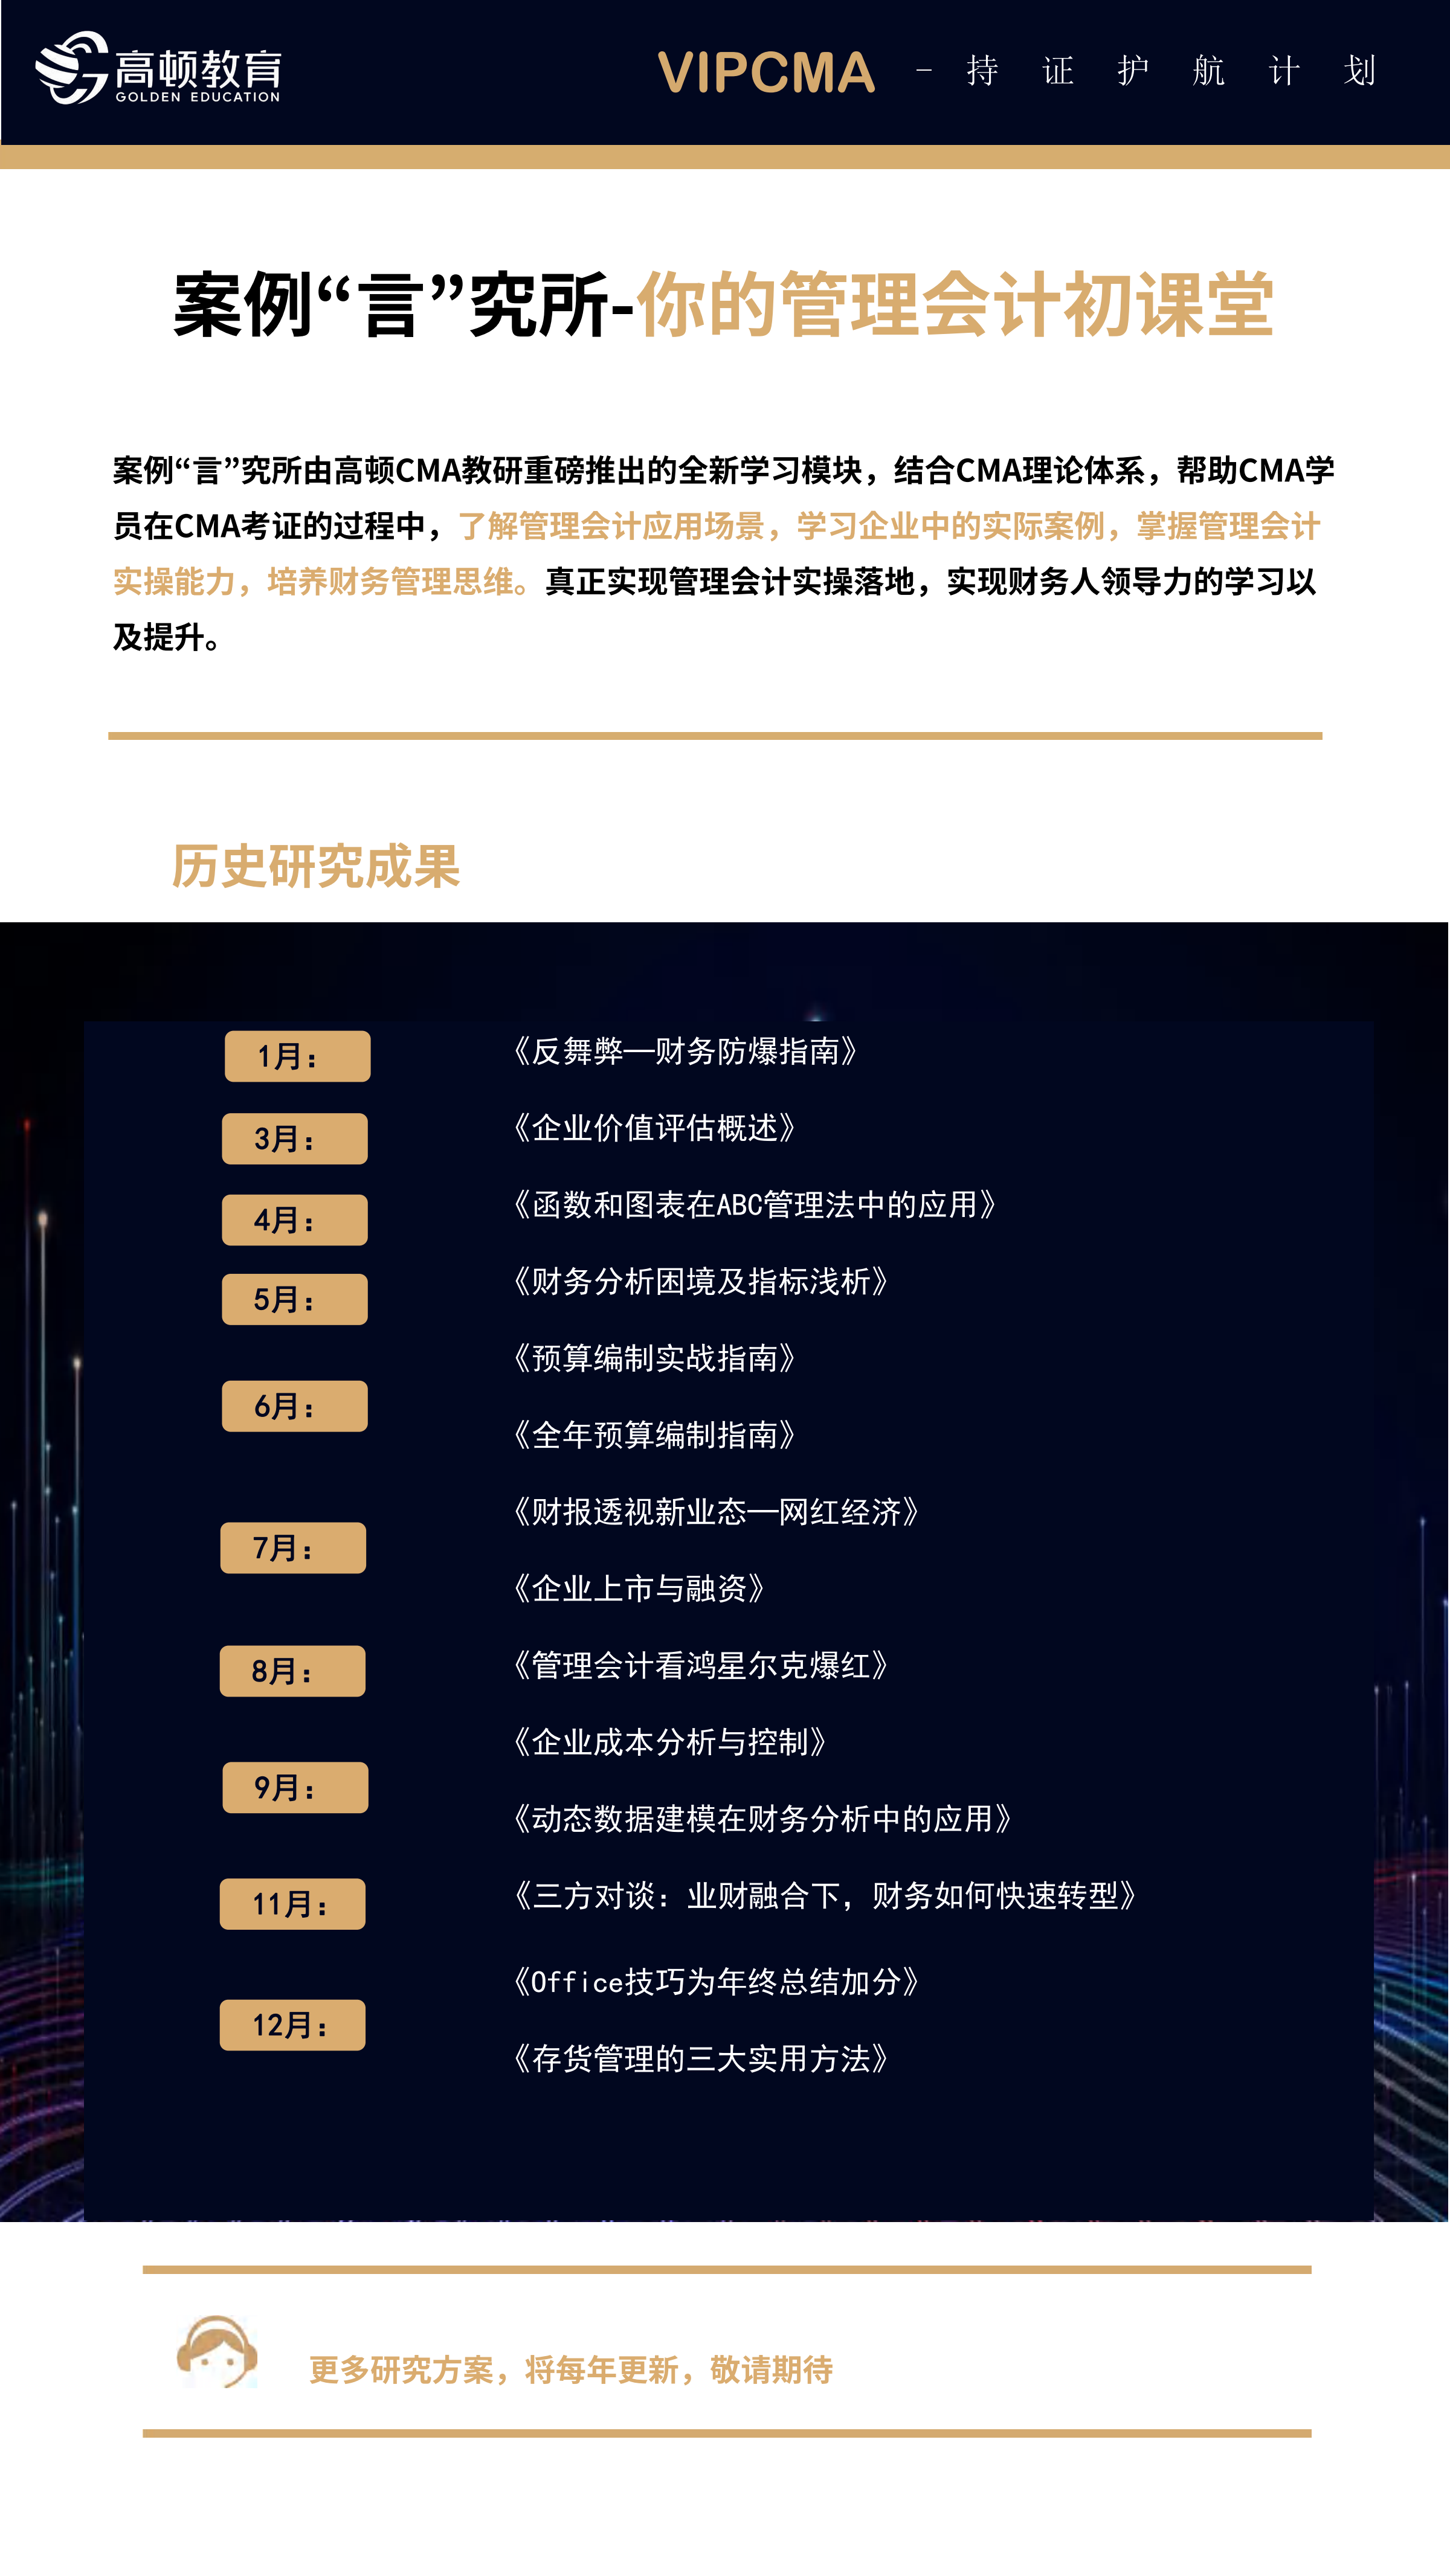 https://simg01.gaodunwangxiao.com/uploadfiles/product-center/202308/09/64151_20230809120238.png